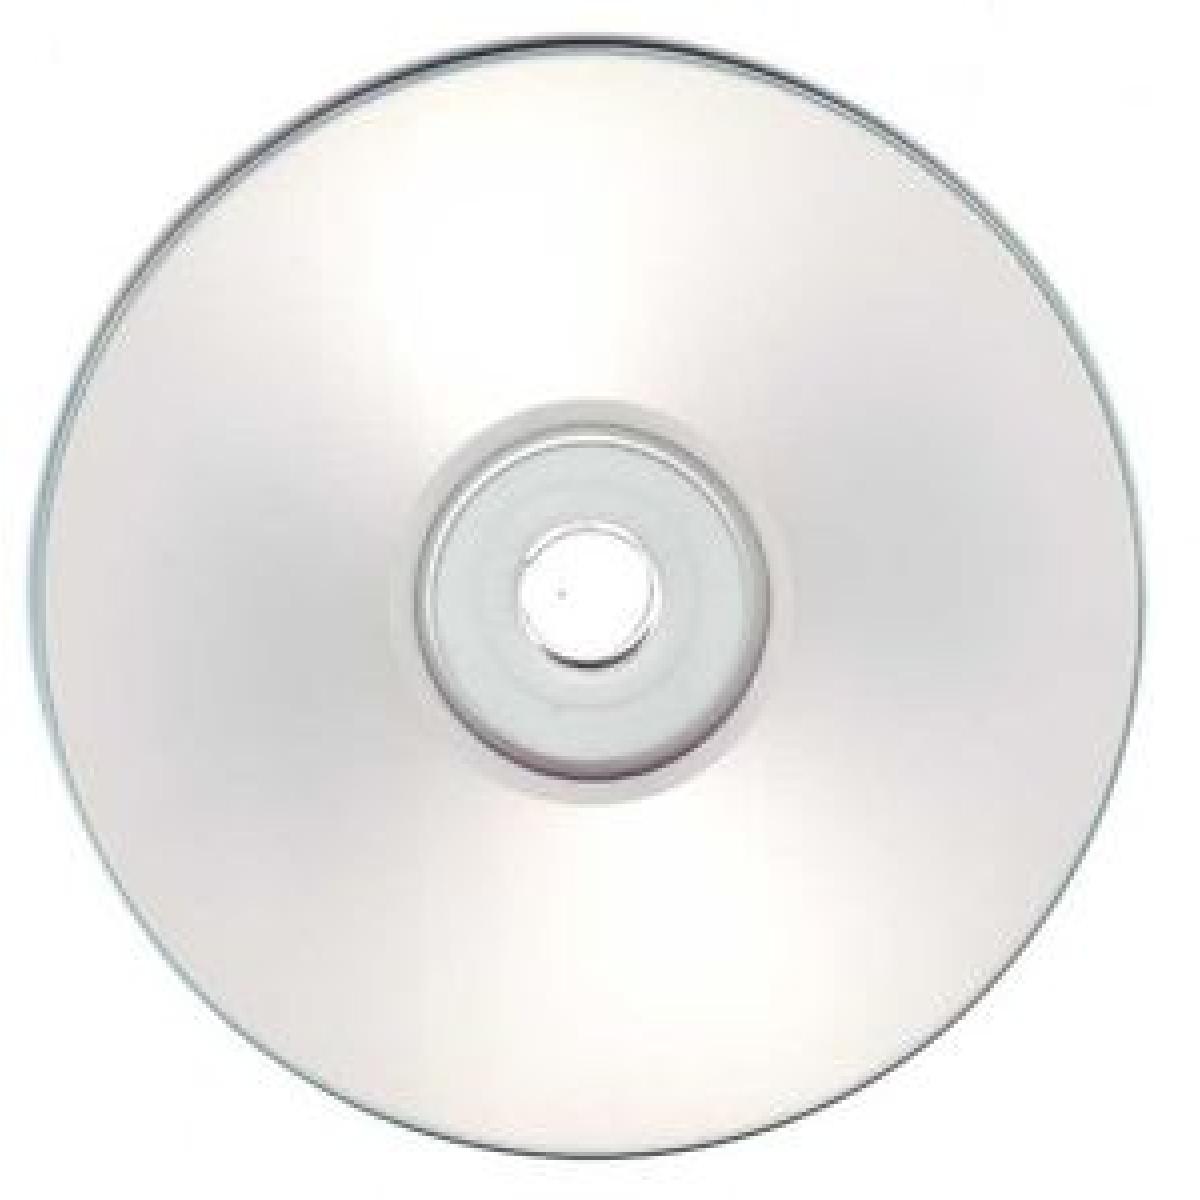 DVD-R Disc